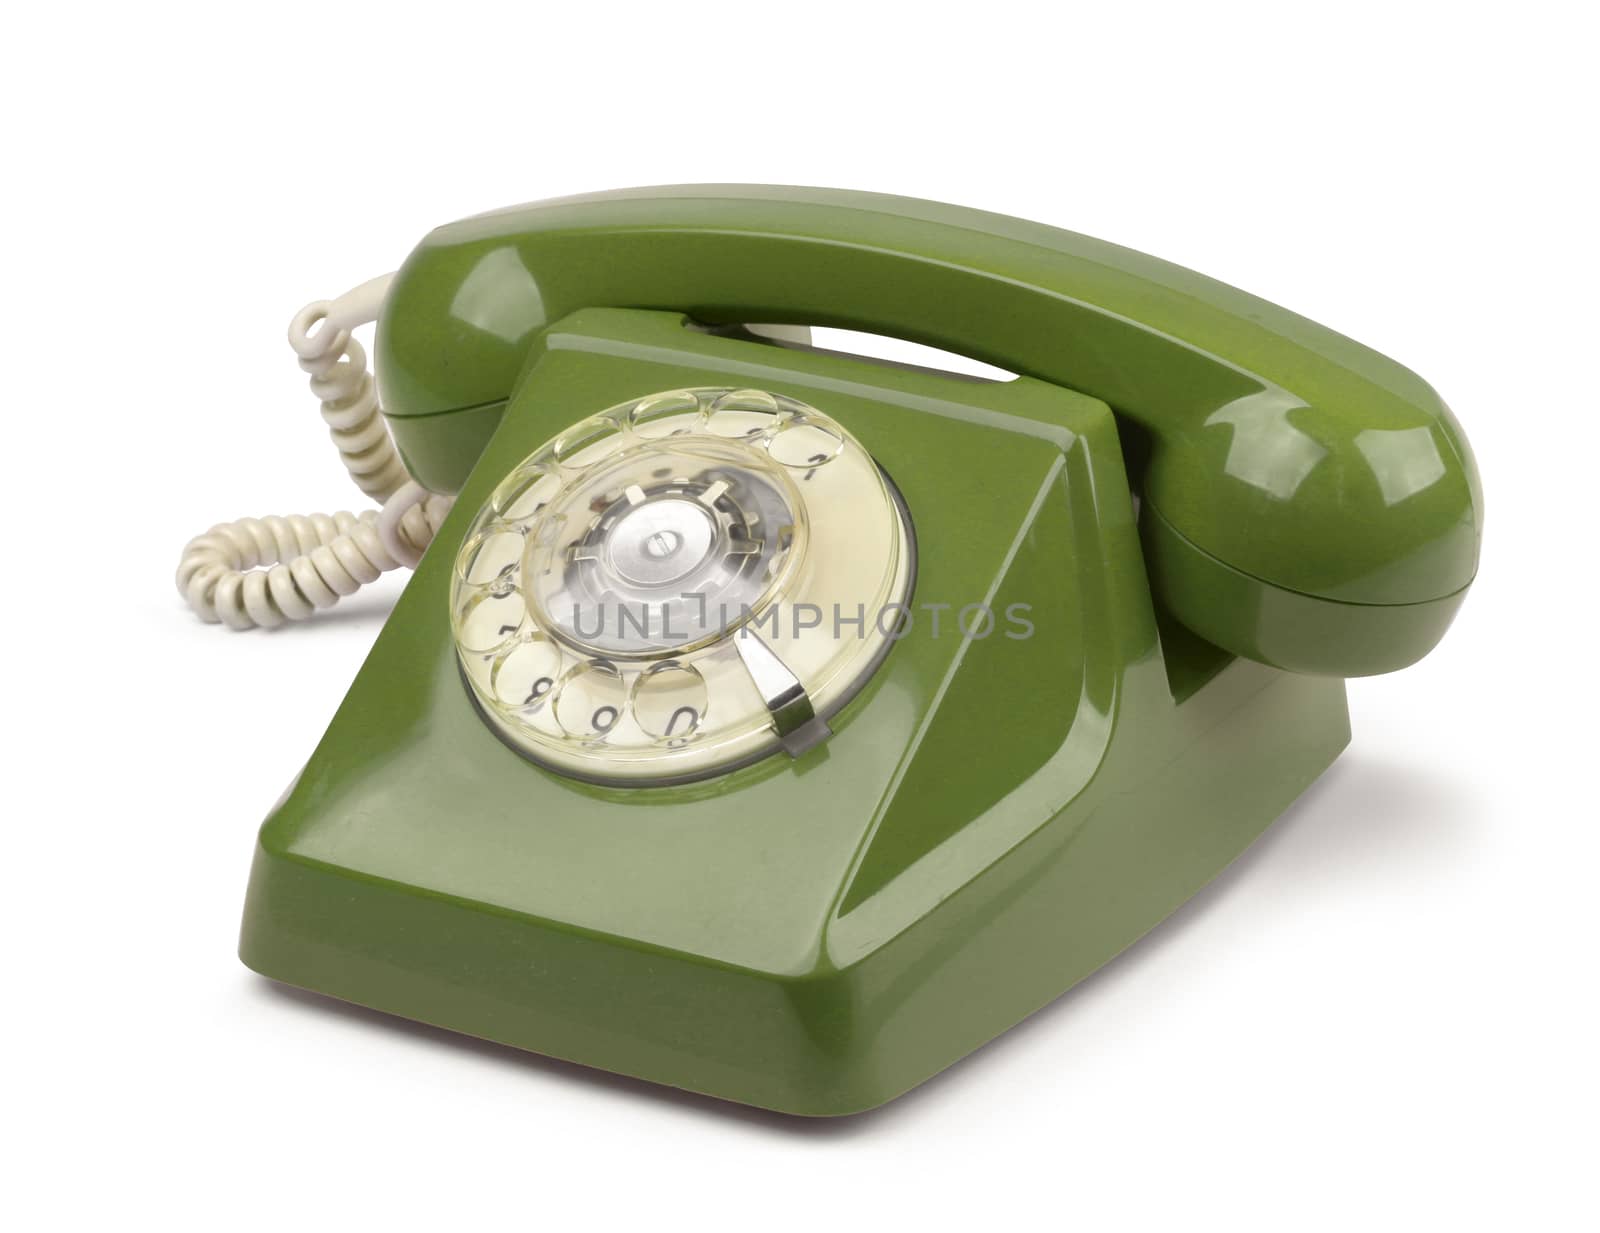 Vintage telephone isolated by anterovium